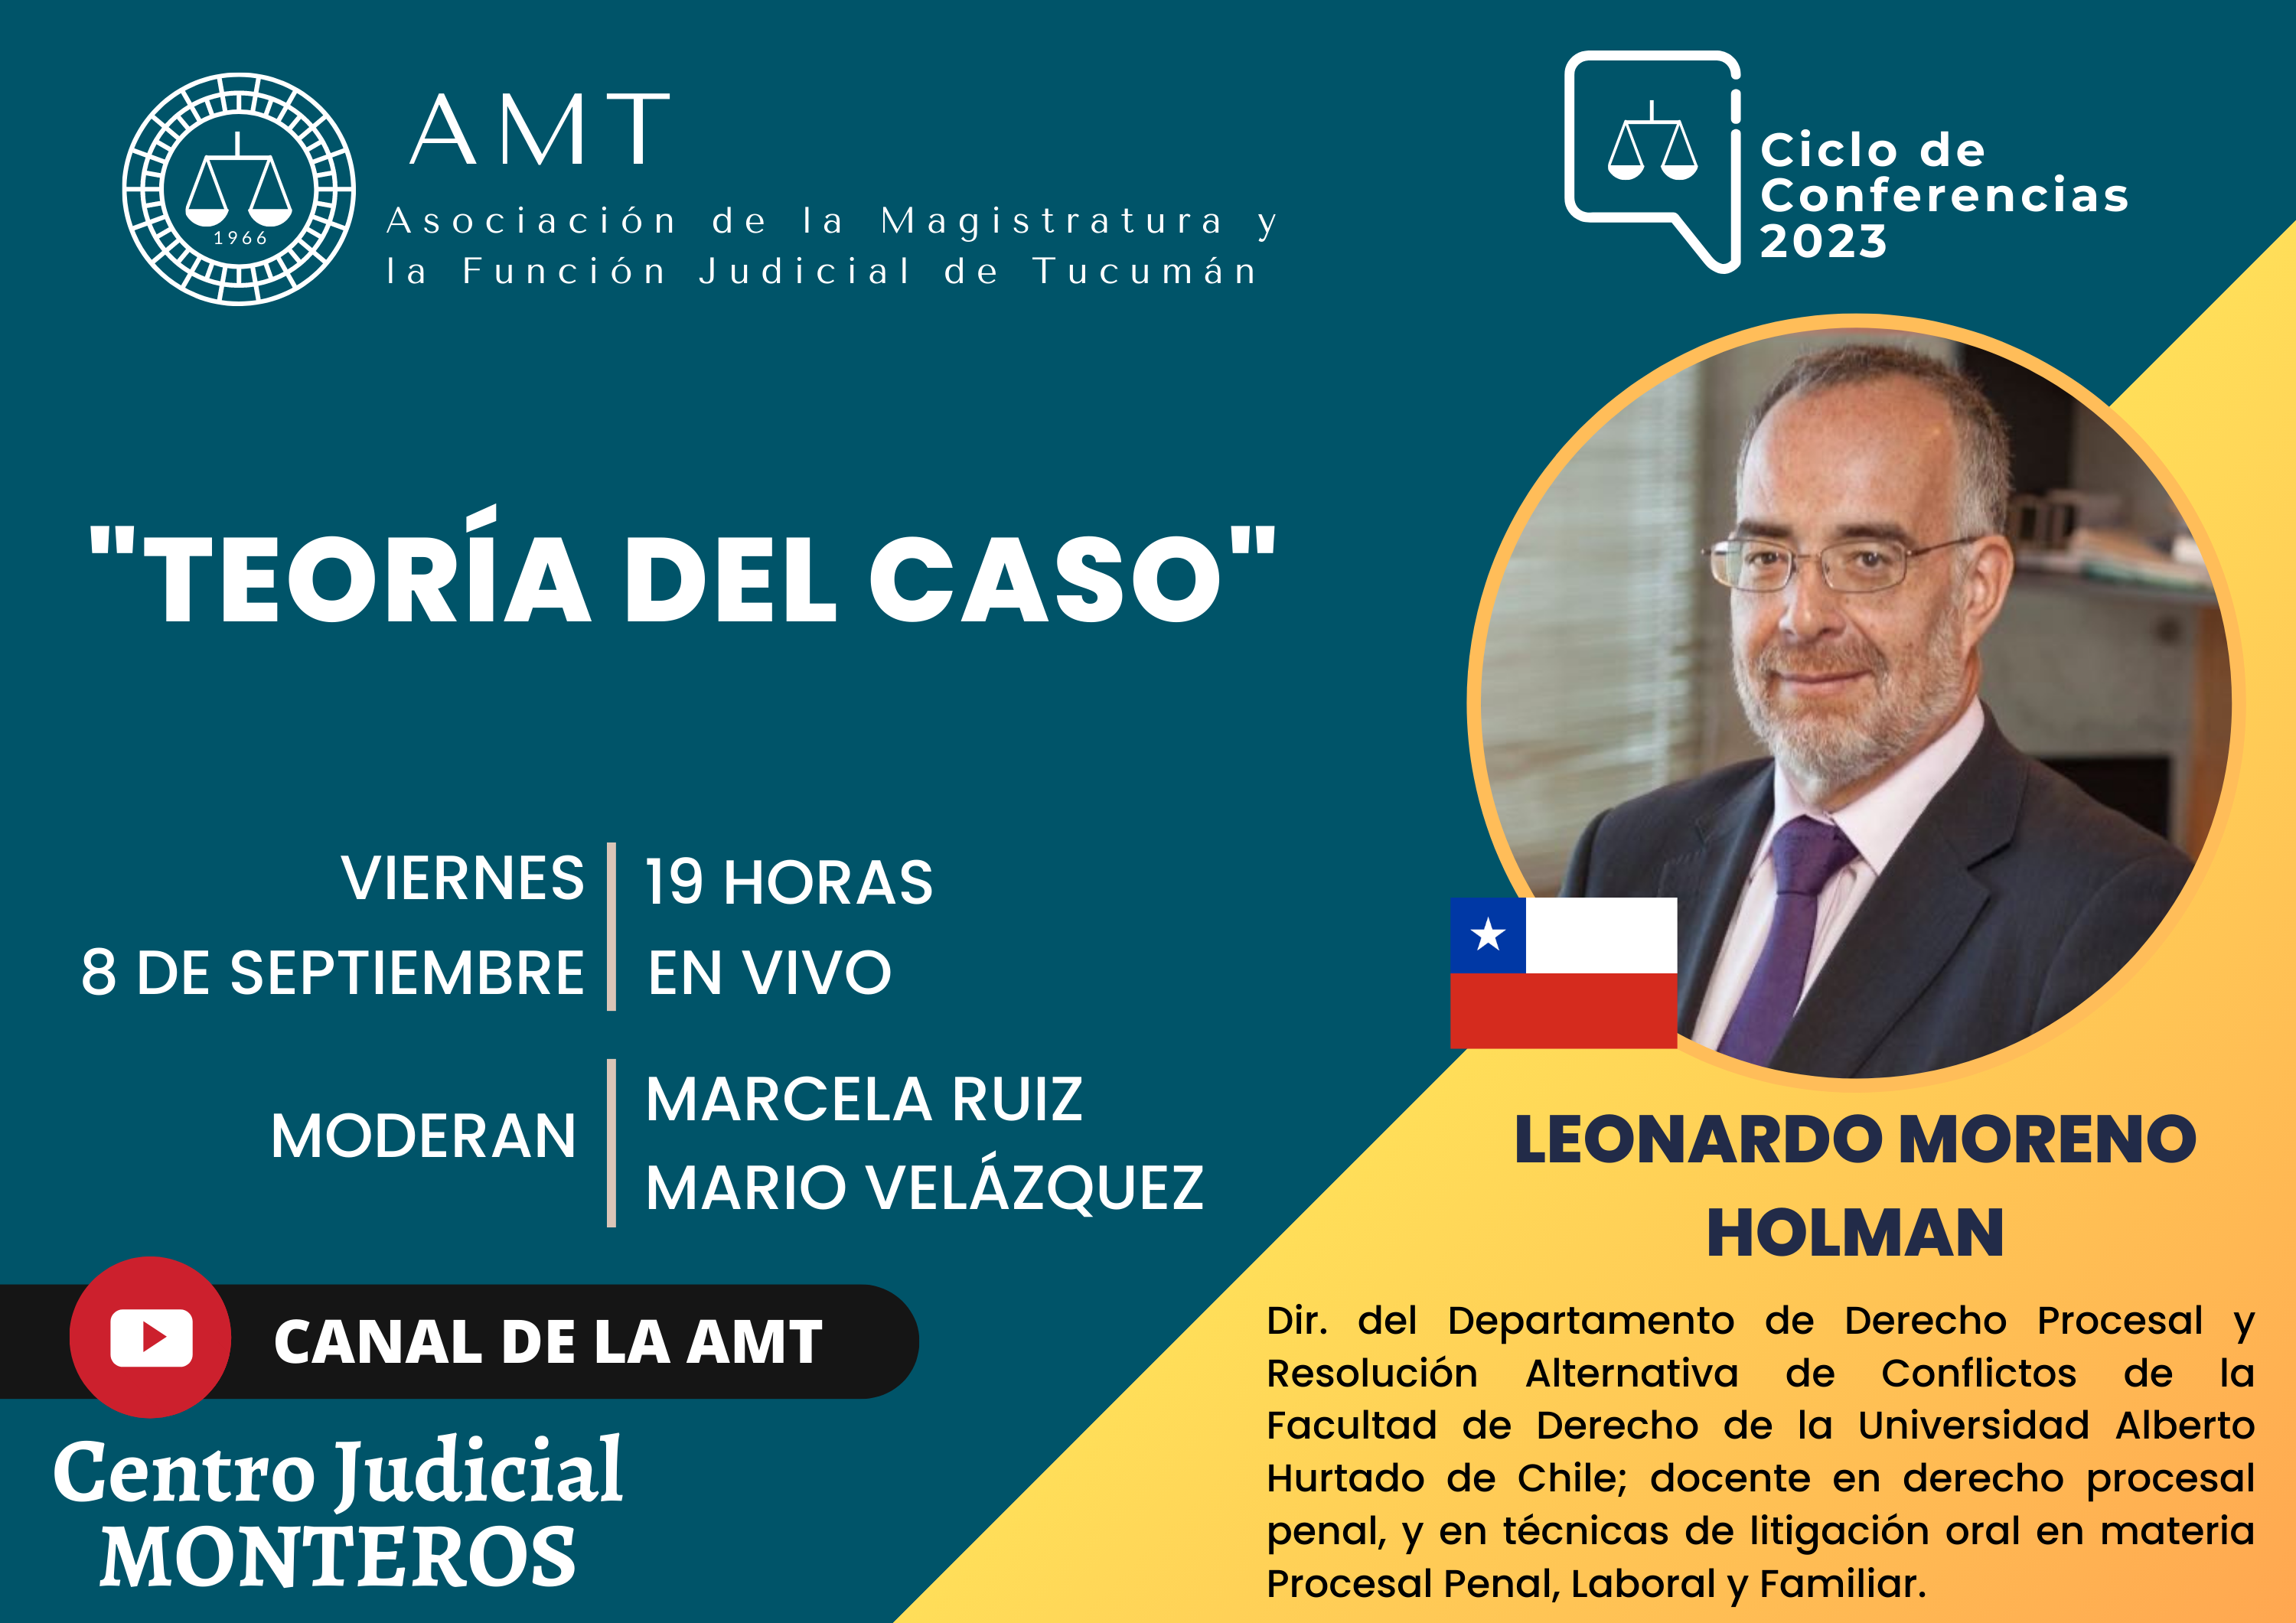 Vuelva a ver la conferencia de Leonardo Moreno Holman «Teoría del caso»